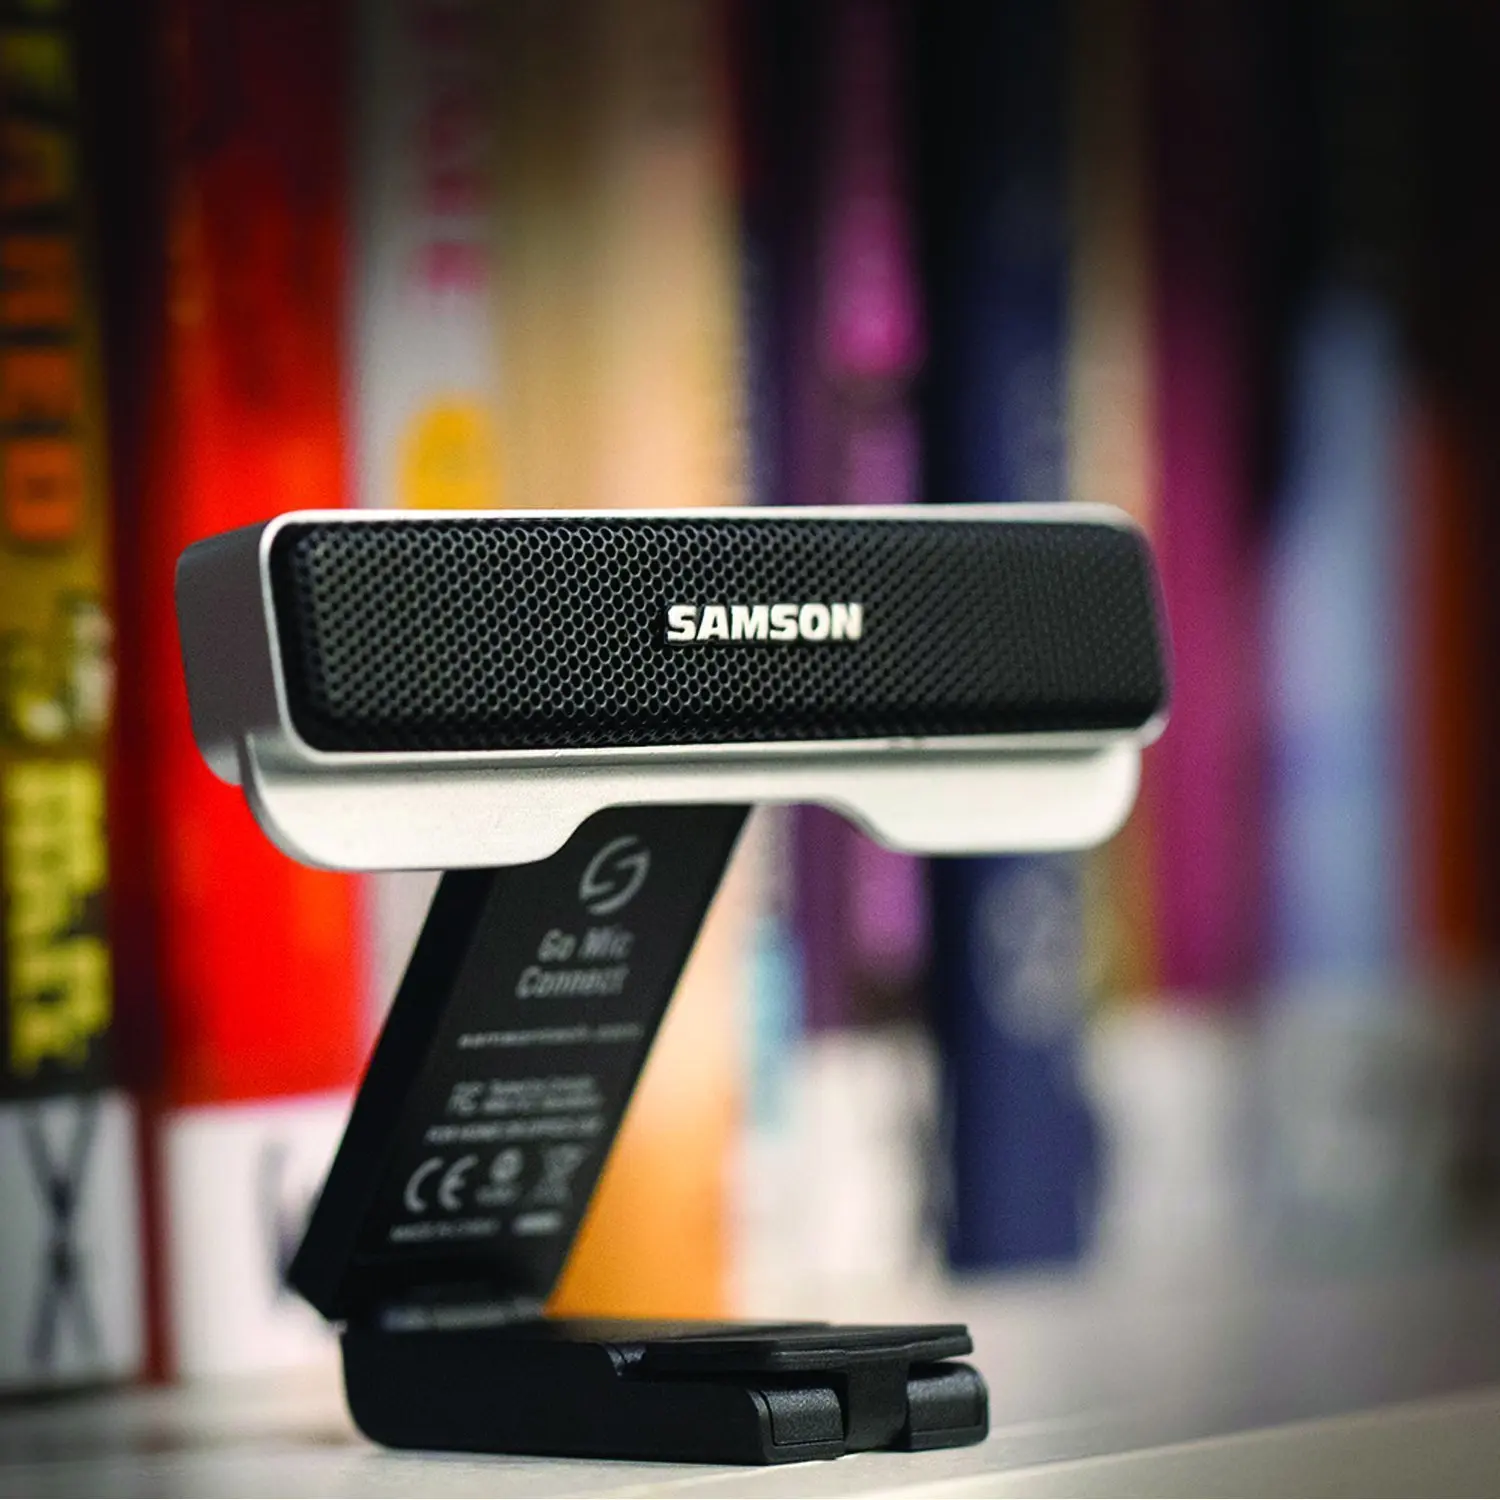 Samson's ultra-compact Go Mic Подключите Usb микрофон с цифровым шумоподавлением Поддержка VoIP от слова до текста DAW программного обеспечения